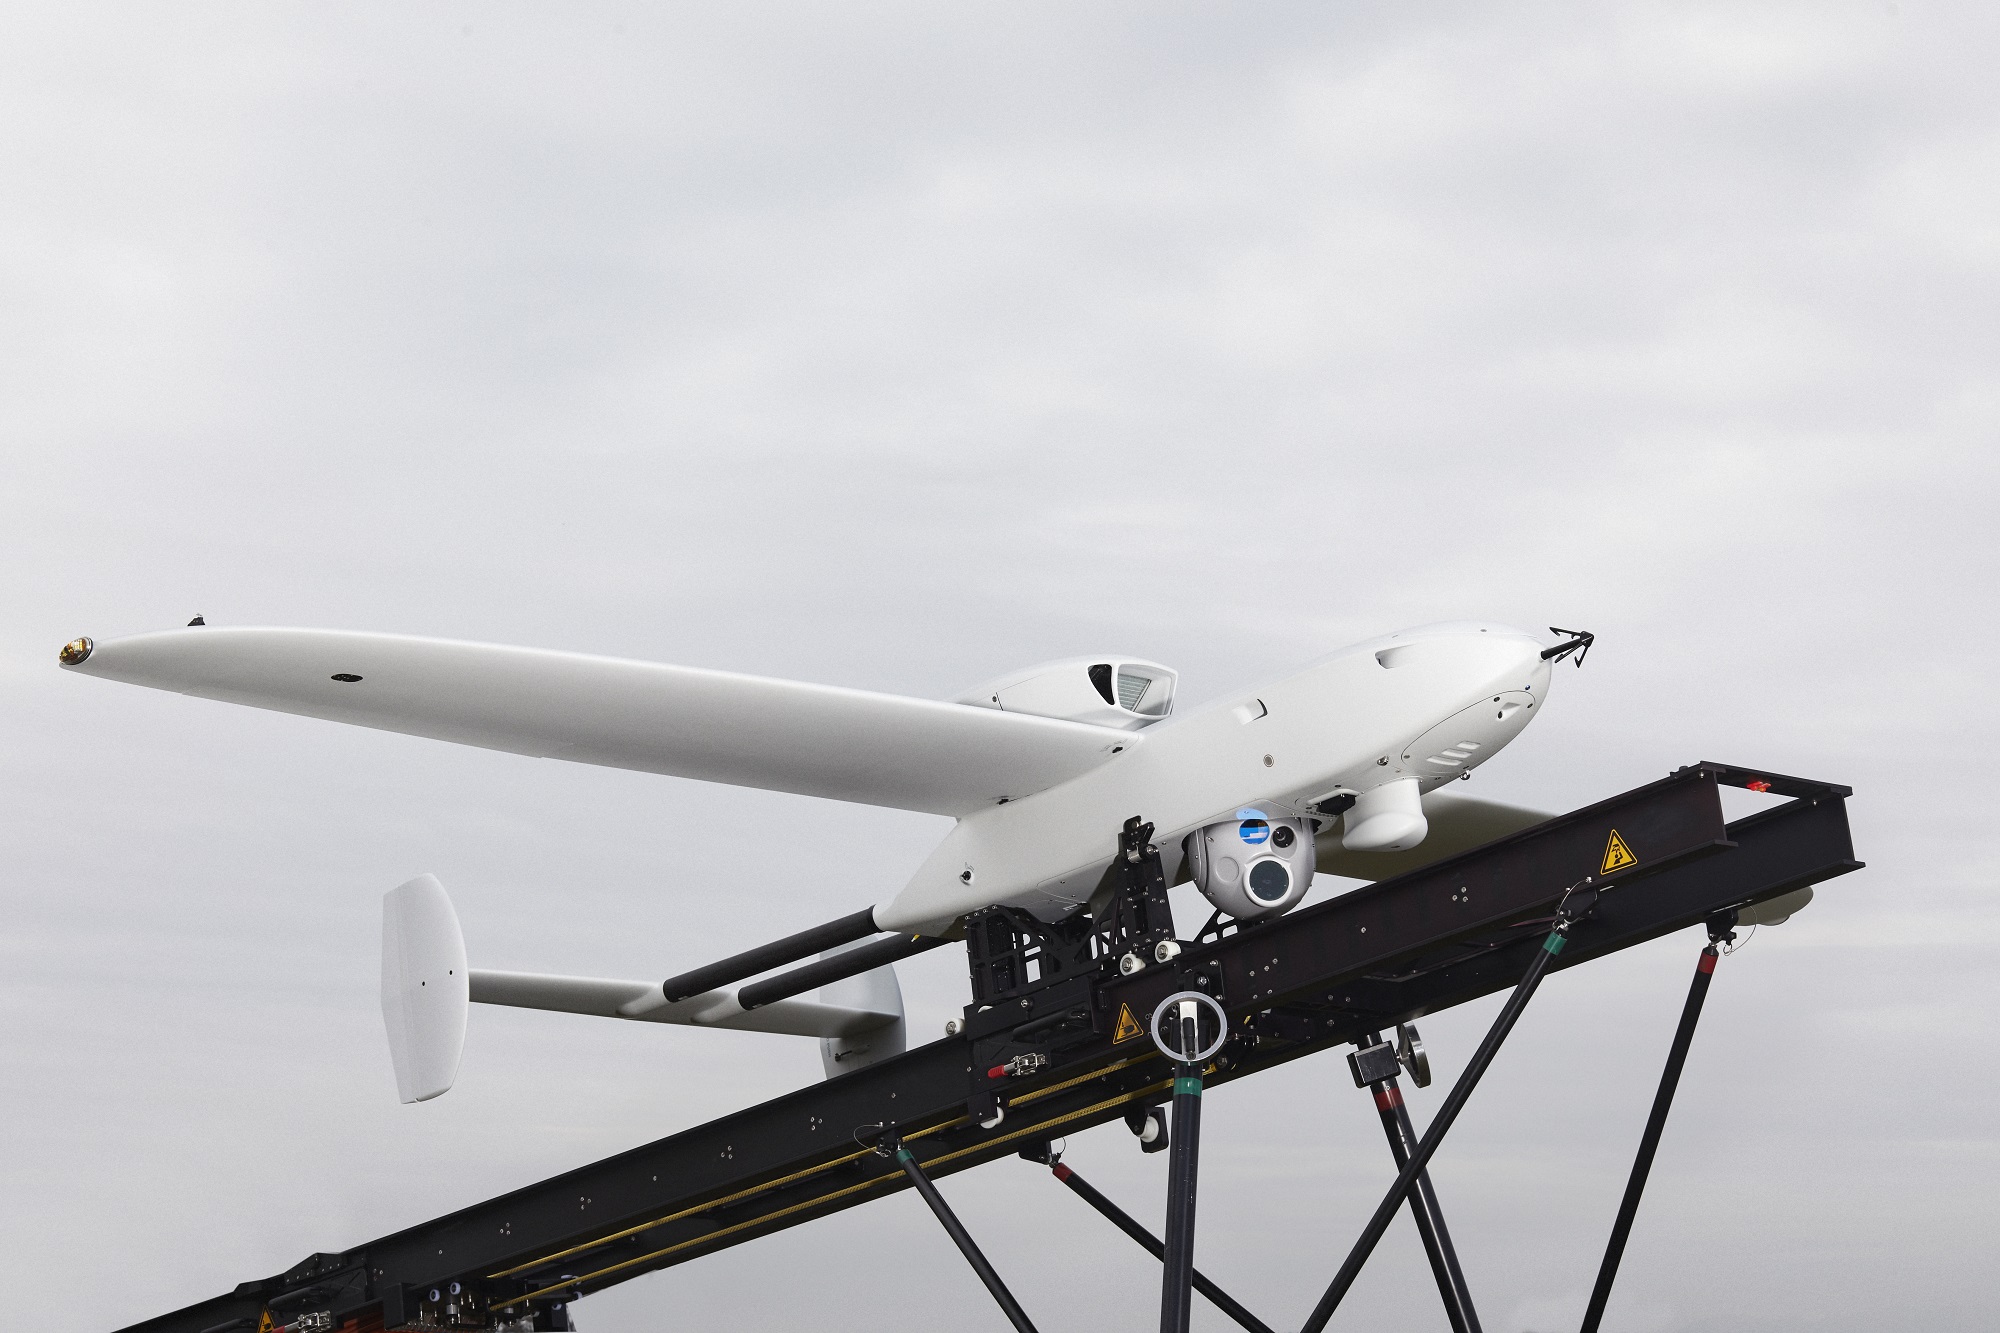 La Germania ha acquistato da Rheinmetall per l'Ucraina i moderni UAV da ricognizione Luna NG, droni in grado di rimanere in aria per più di 12 ore e di trasmettere informazioni a una distanza di oltre 100 chilometri.